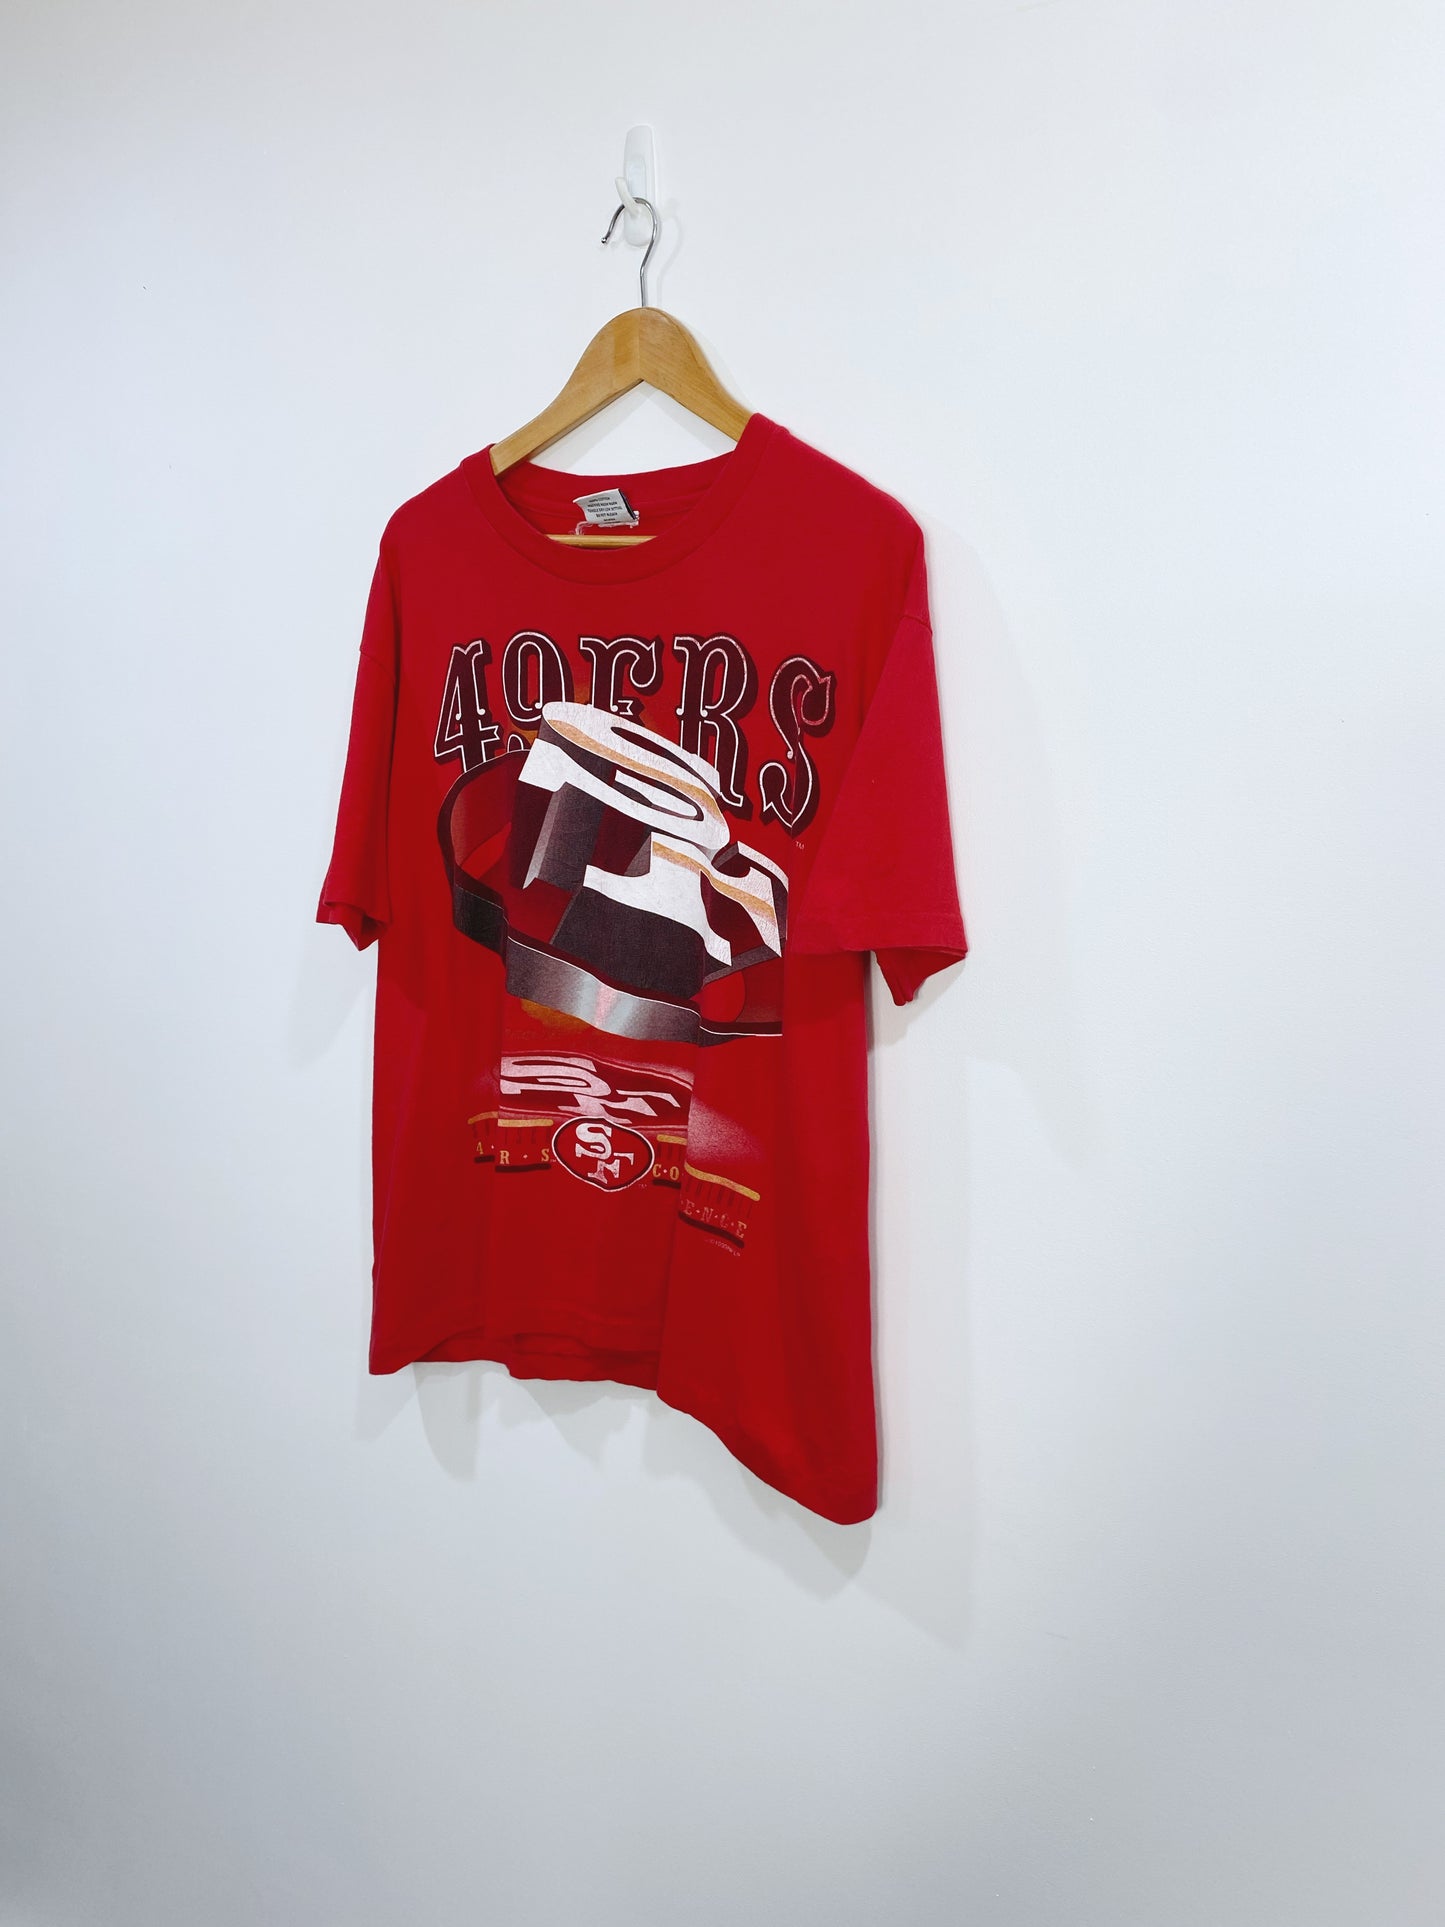 Vintage 1993 San Fransisco 49ers T-shirt L